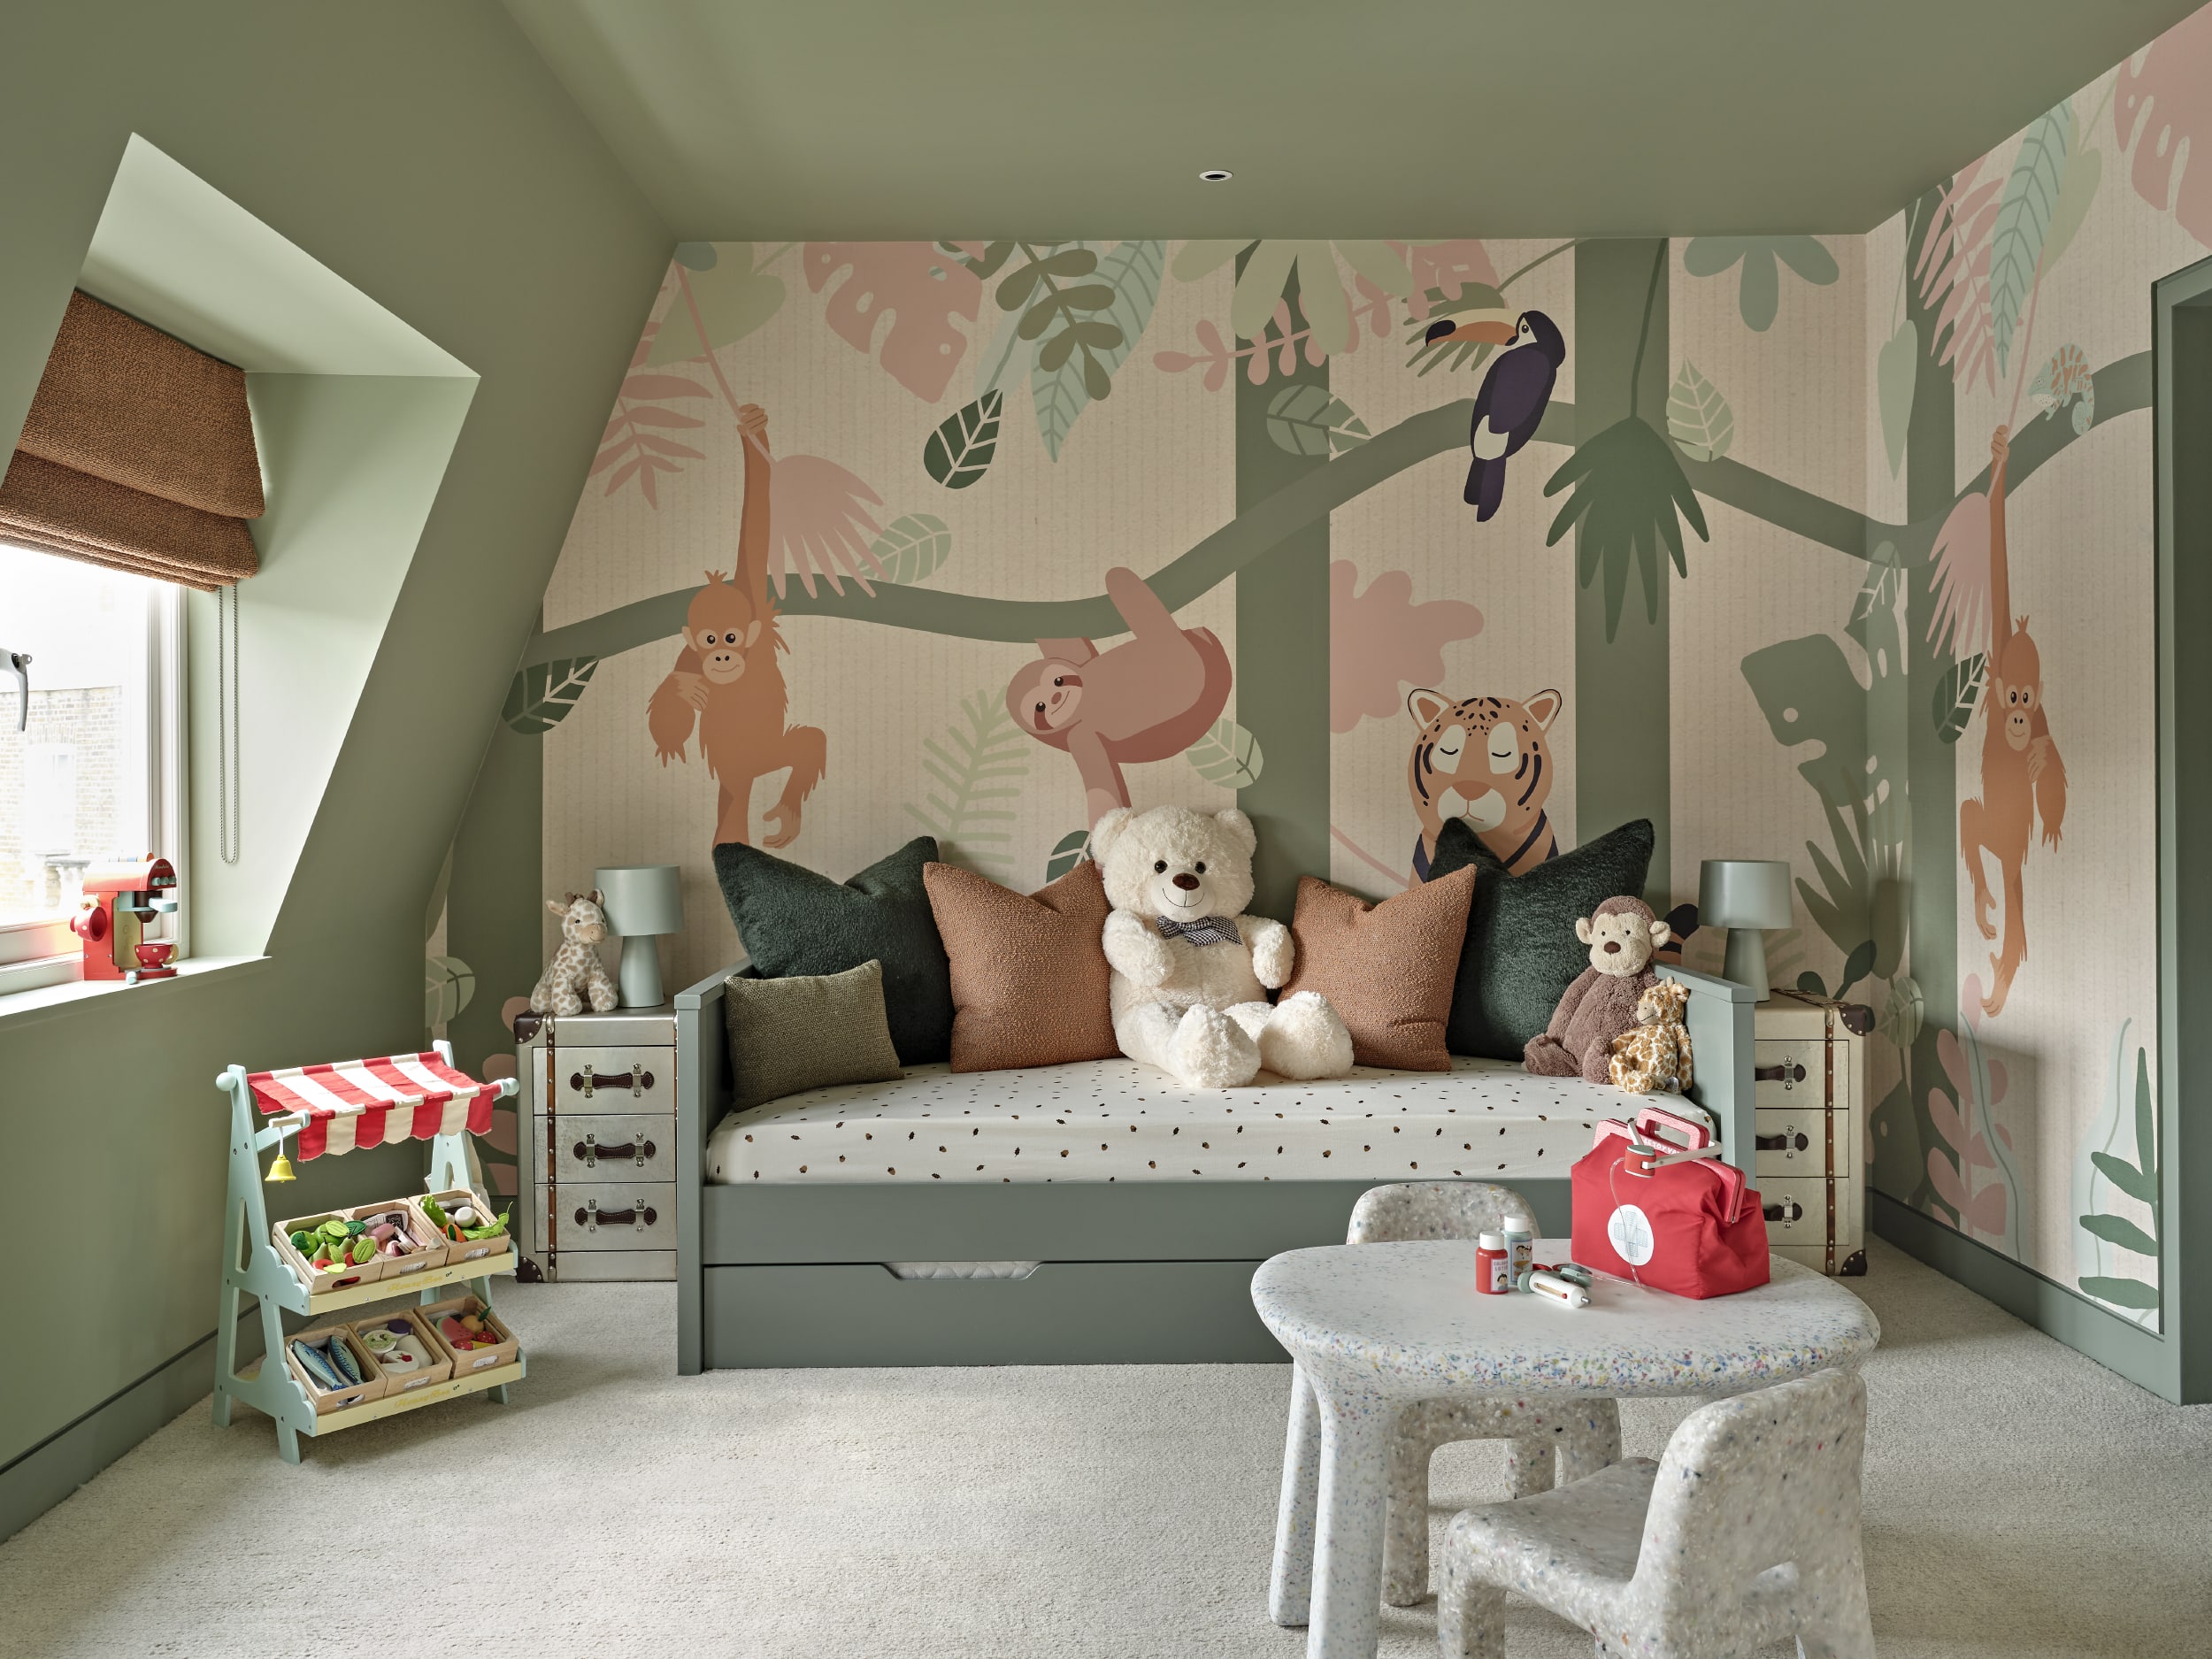 Luxury children's bedroom, with buddies wallpaper.